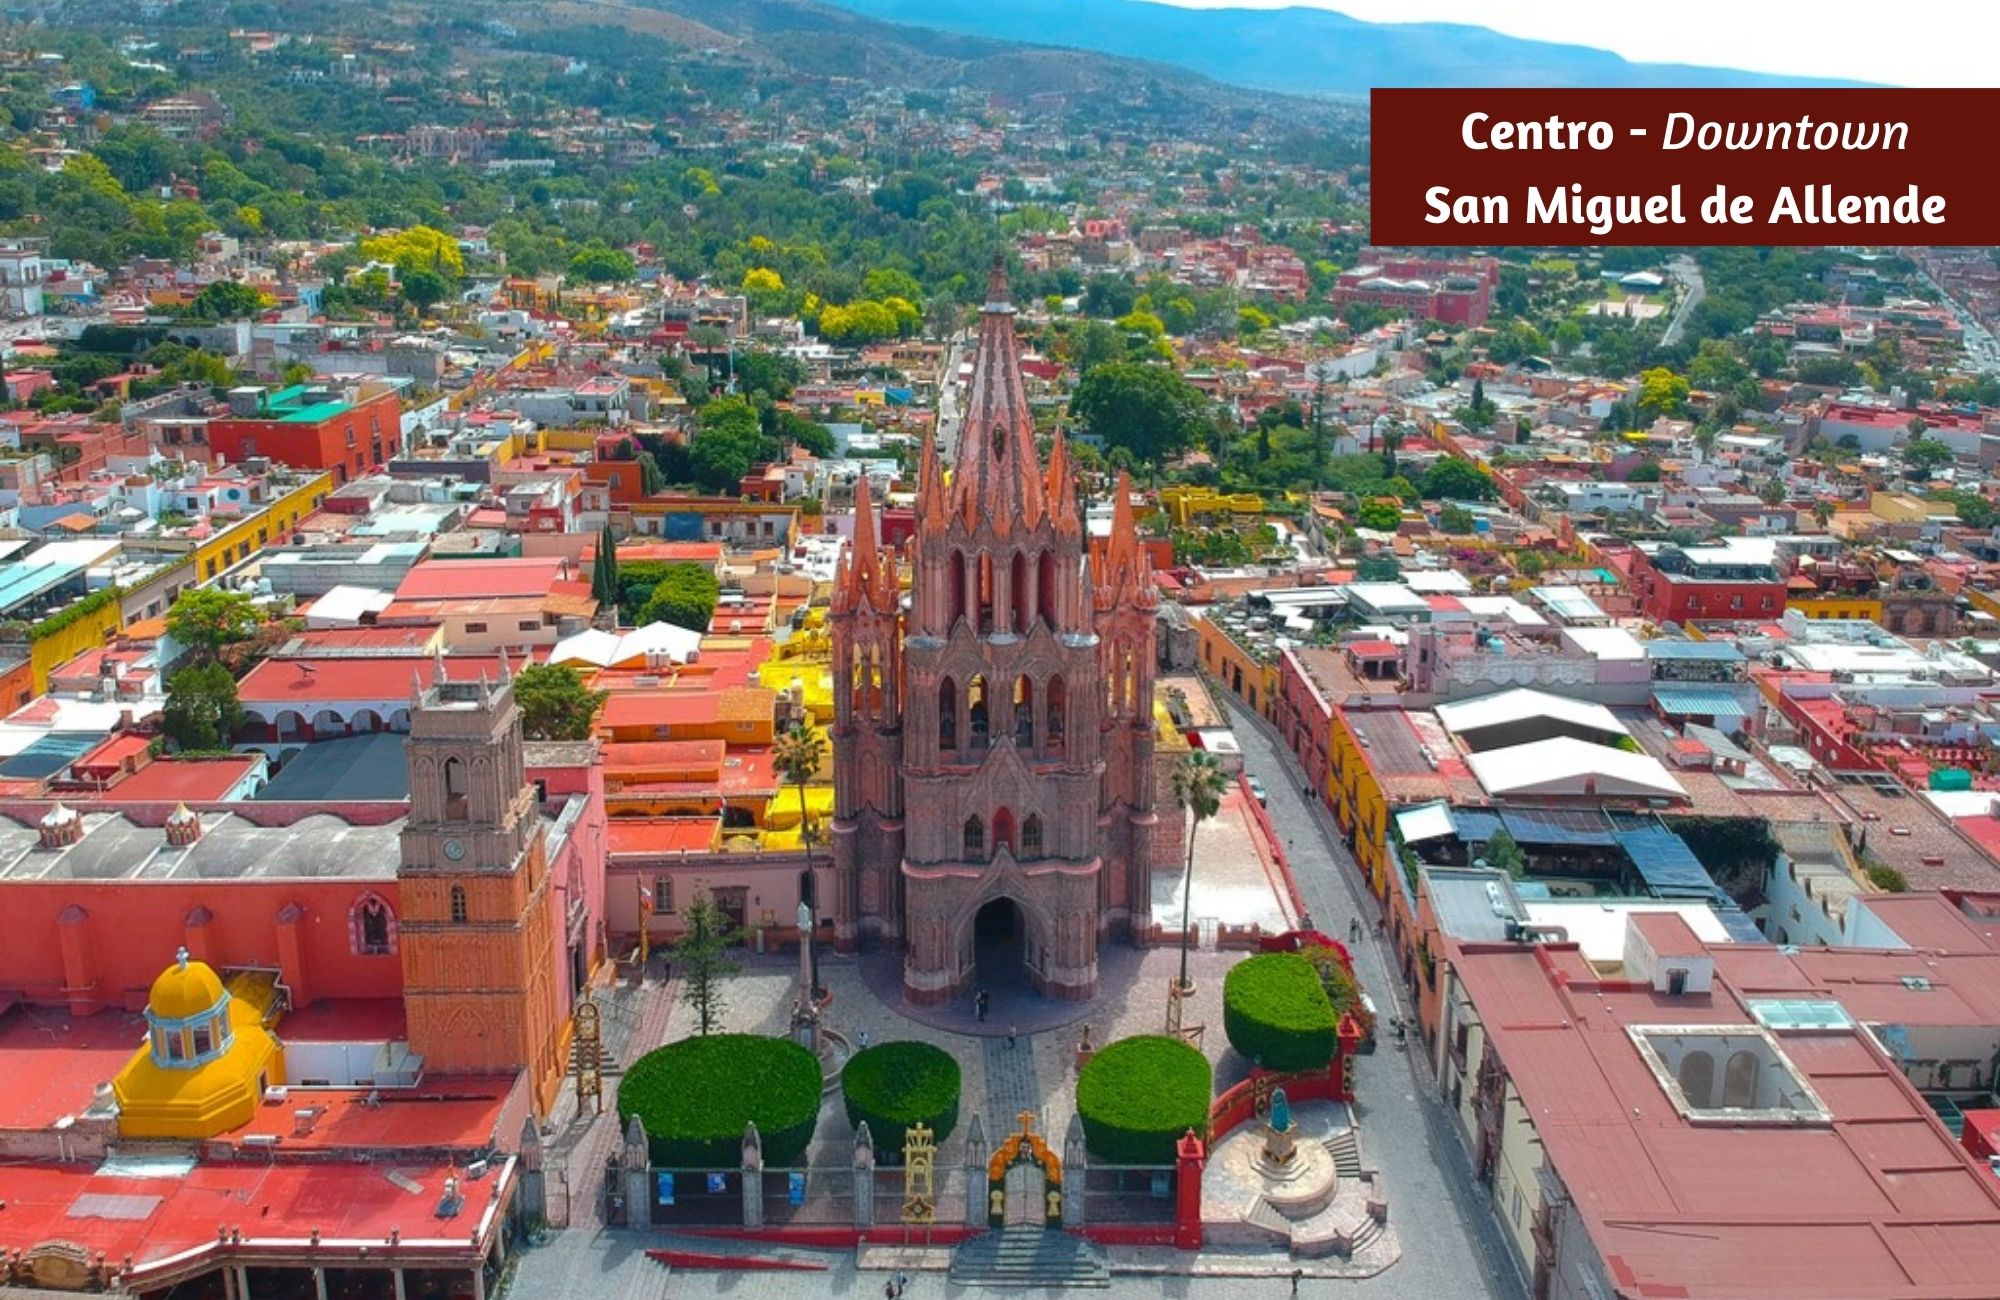 Lote de 1,265 m2 en Residencial de lujo con amenidades, en venta San Miguel de Allende.